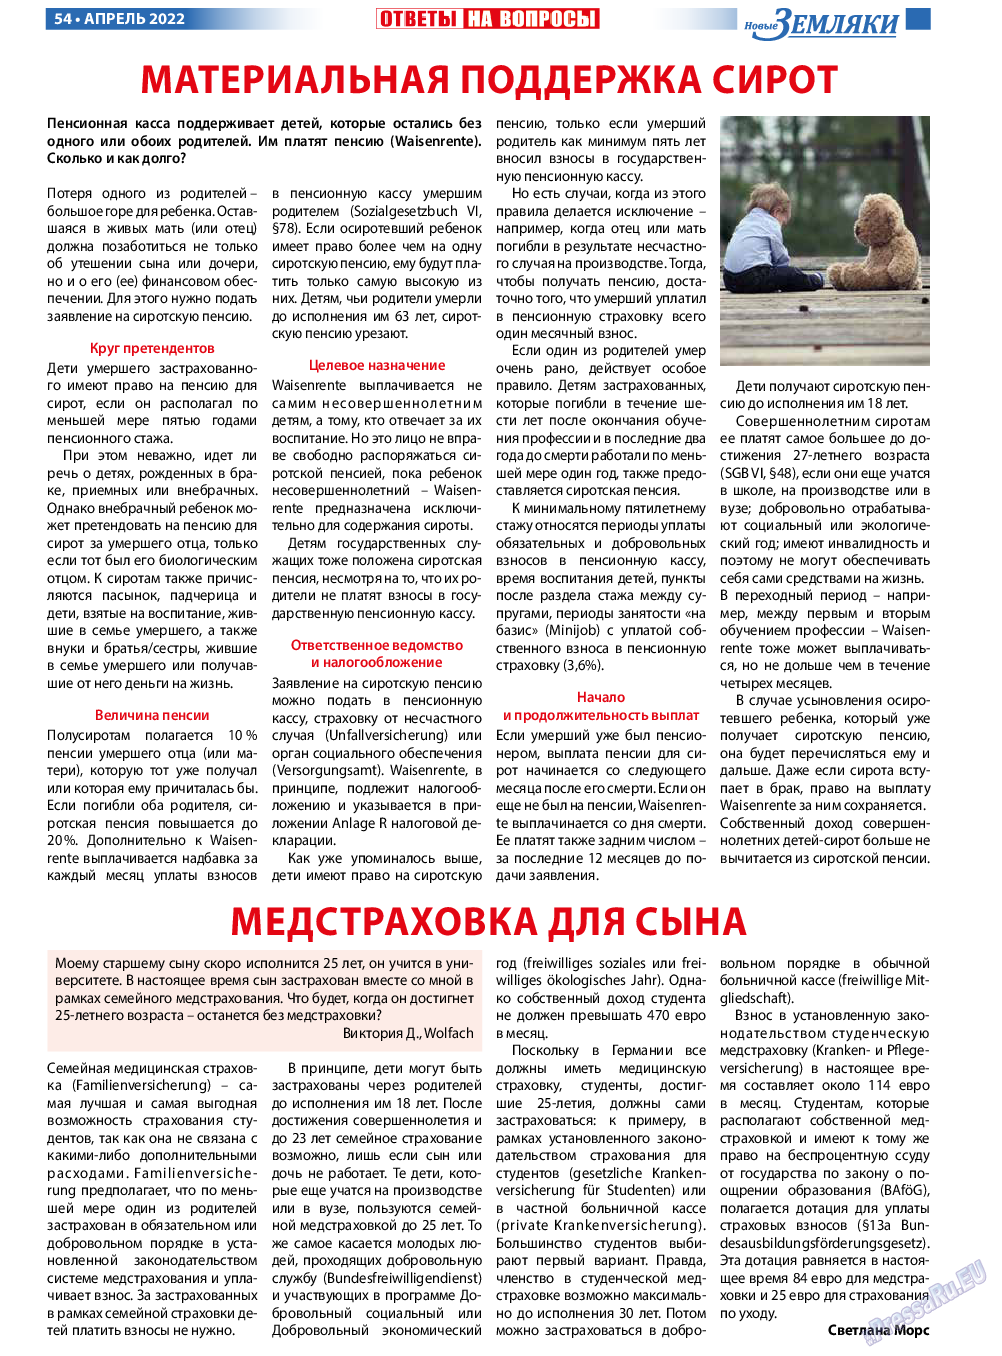 Новые Земляки, газета. 2022 №4 стр.54